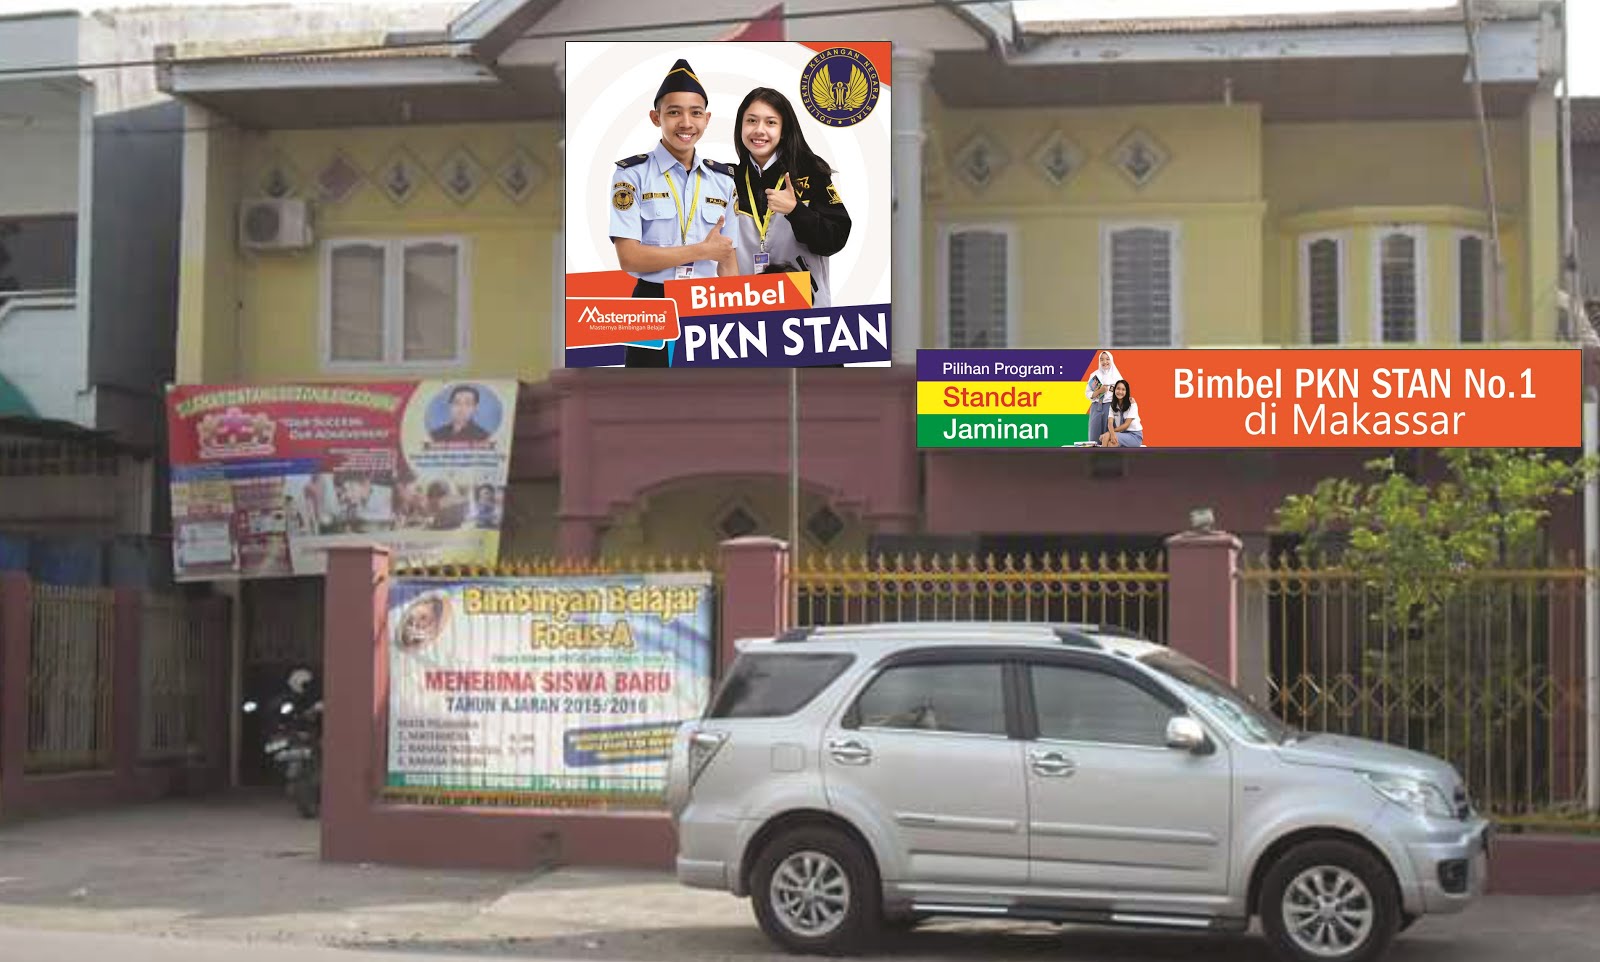 Bimbel PKN STAN No.1 di Makassar Sulsel